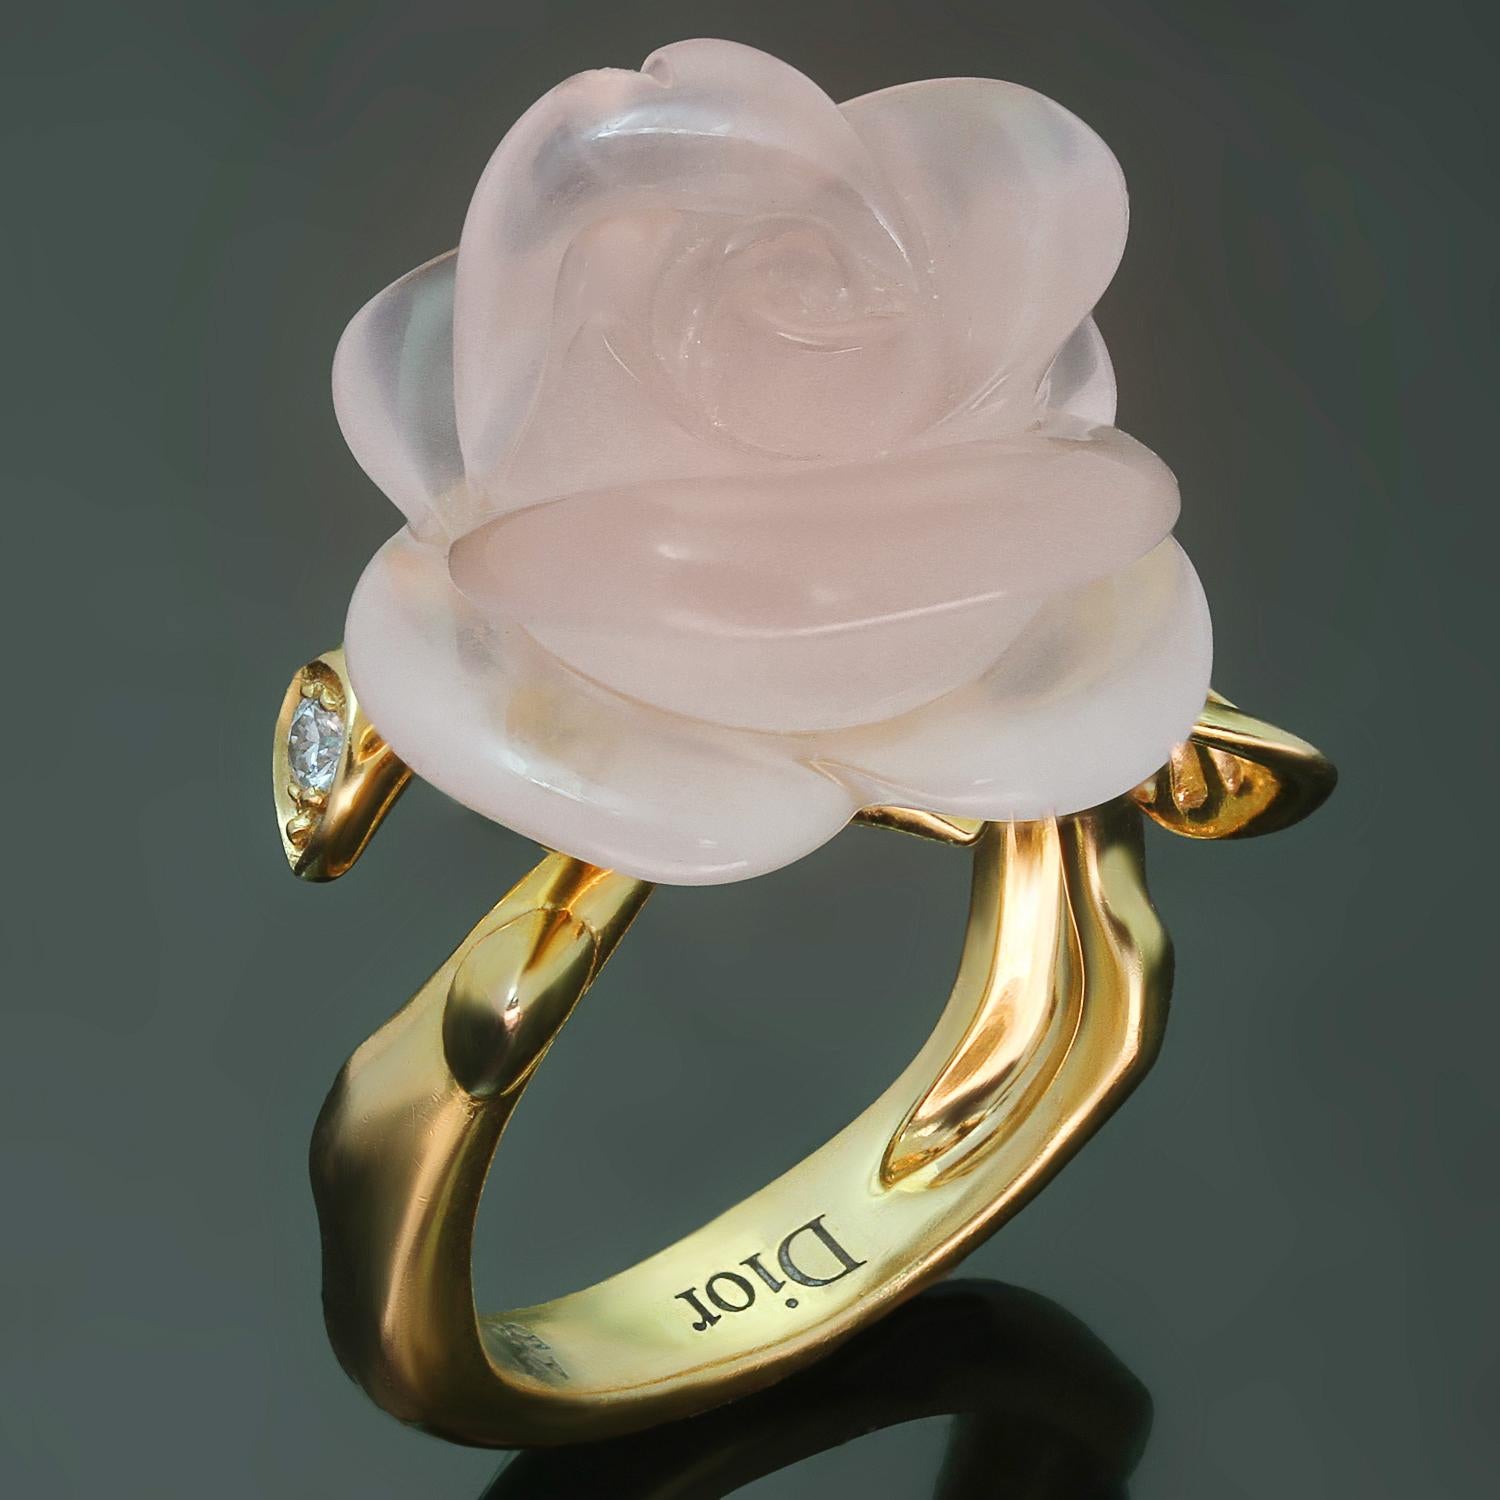 Dieser wunderschöne Ring aus der kultigen Collection'S Pre Catelan von Christian Dior ist aus 18 Karat Gelbgold gefertigt und zeigt eine elegante Rosenblüte aus Rosenquarz, die mit runden Brillanten E-F-G VVS1-VVS2 mit einem geschätzten Gewicht von